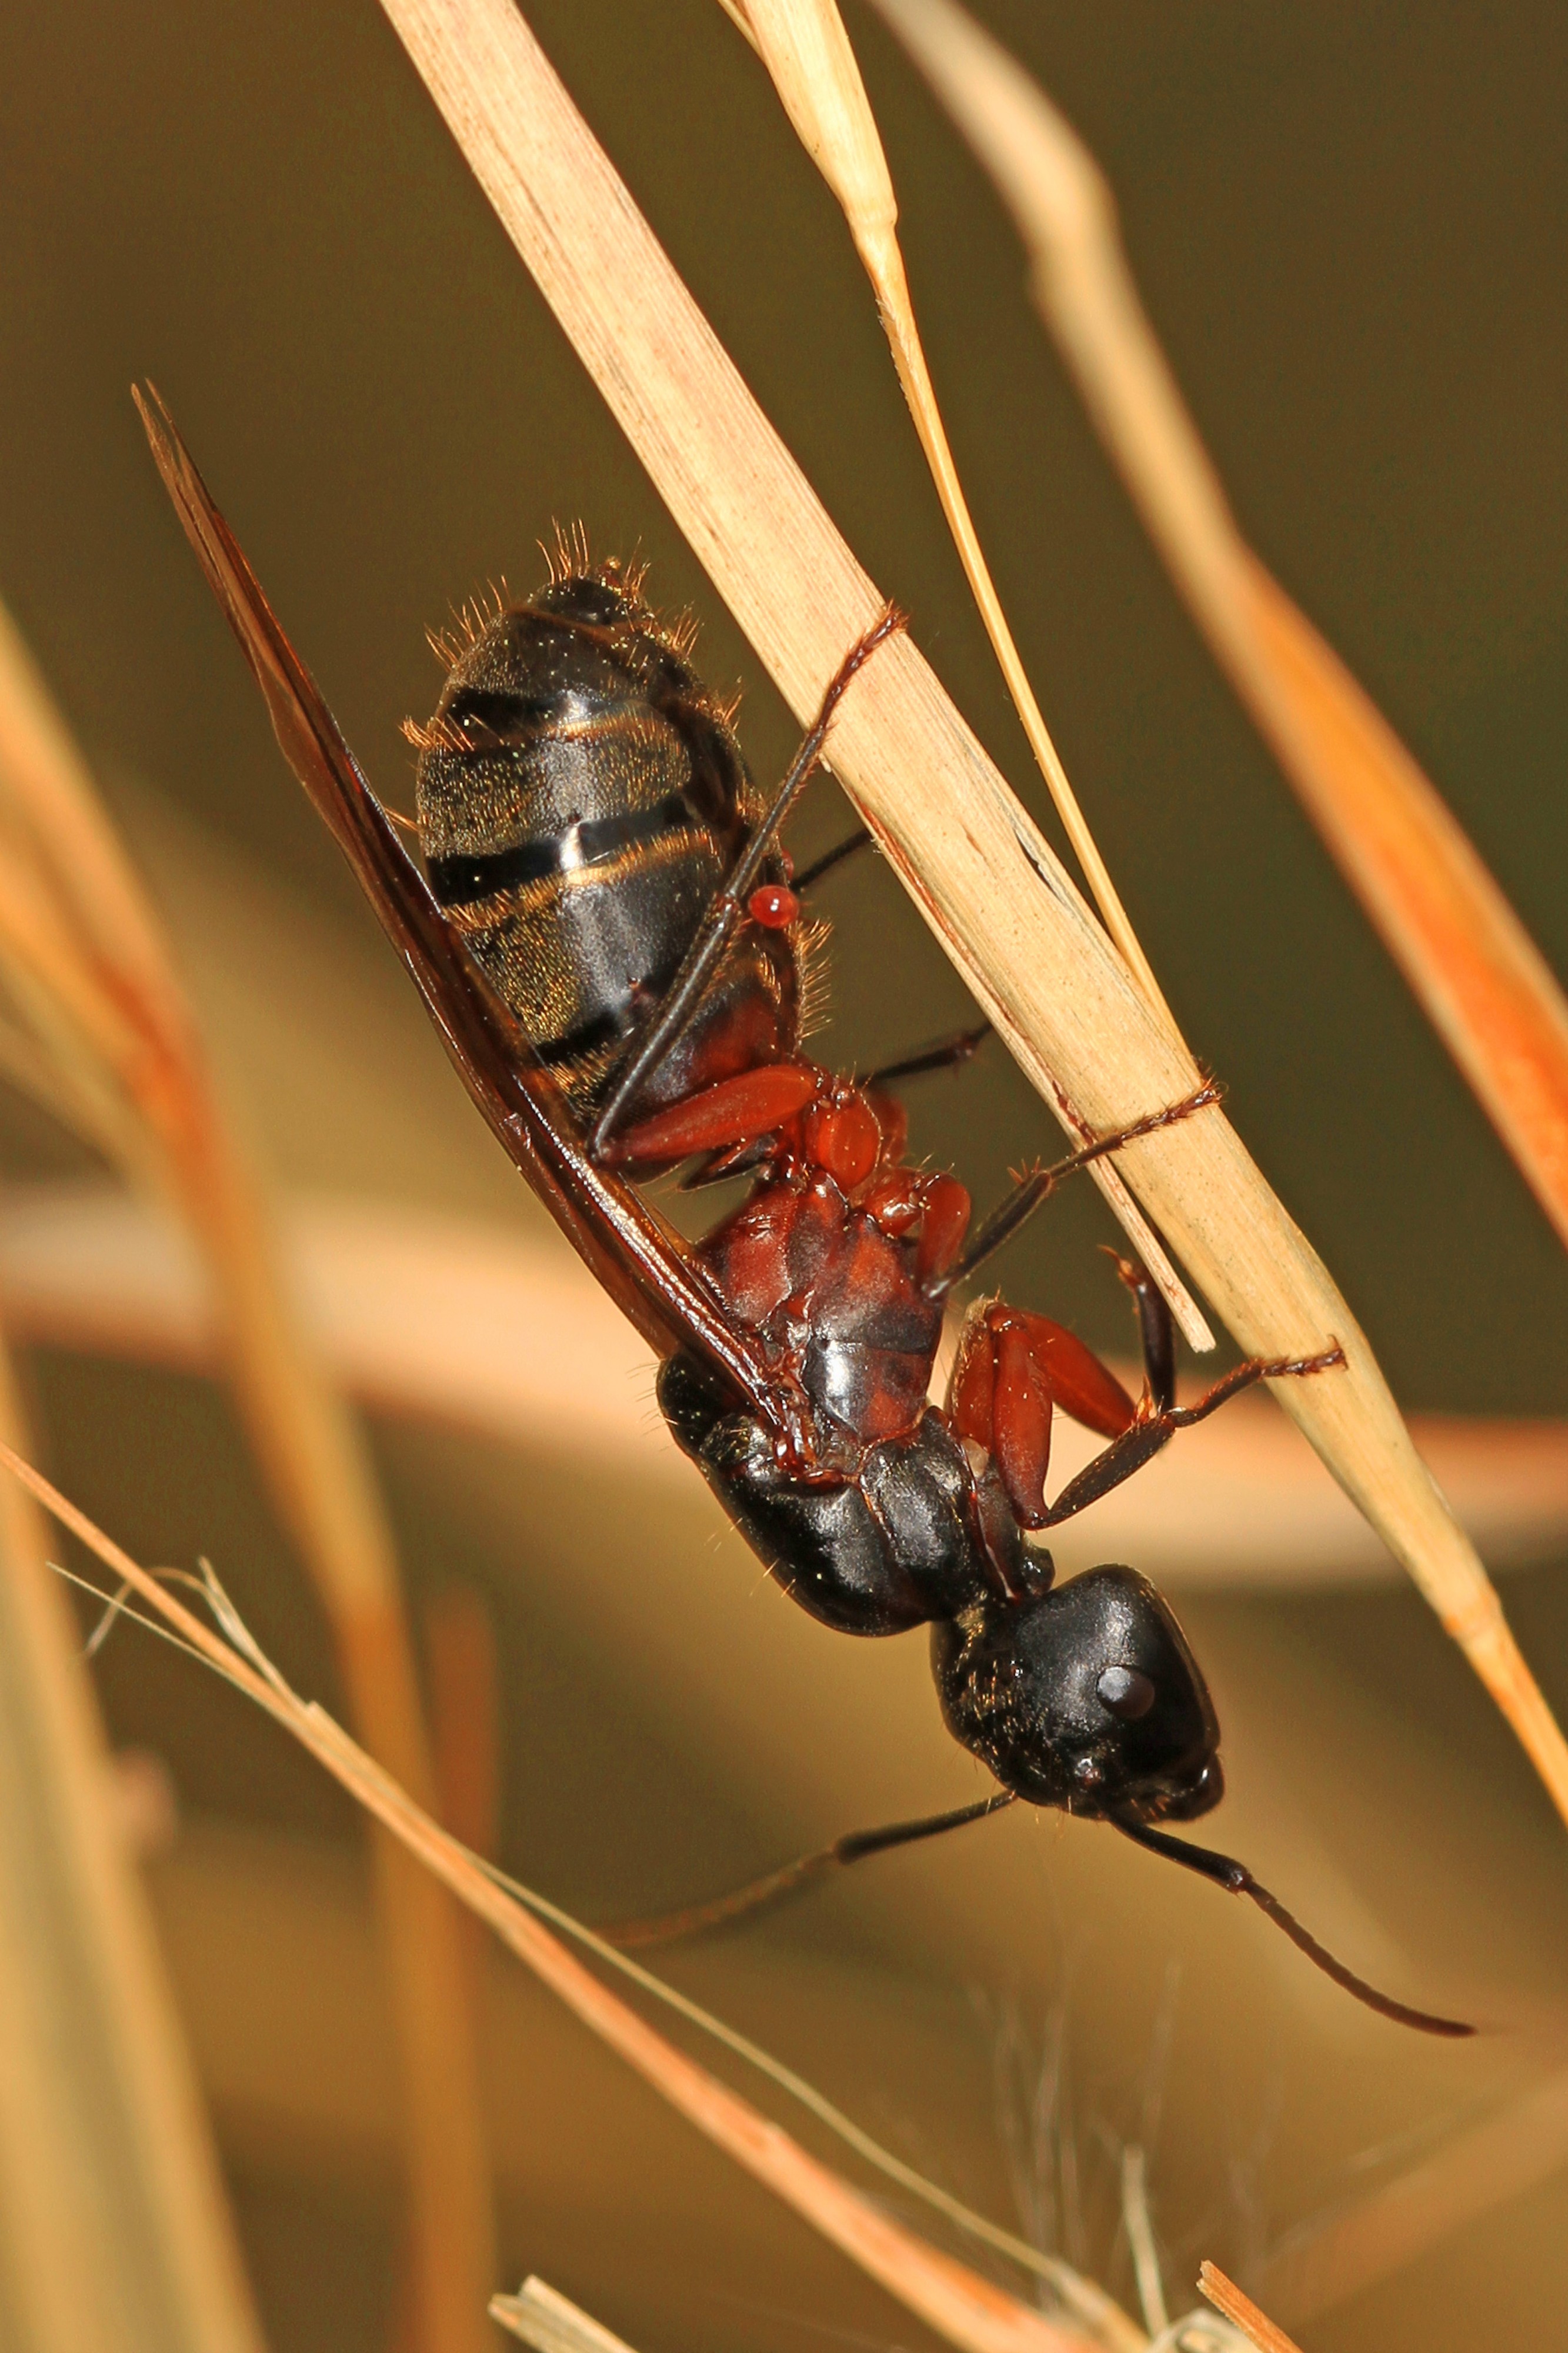 Carpenter Ant Queen - Camponotus species, Meadowood Farm SRMA, Mason Neck, Virginia